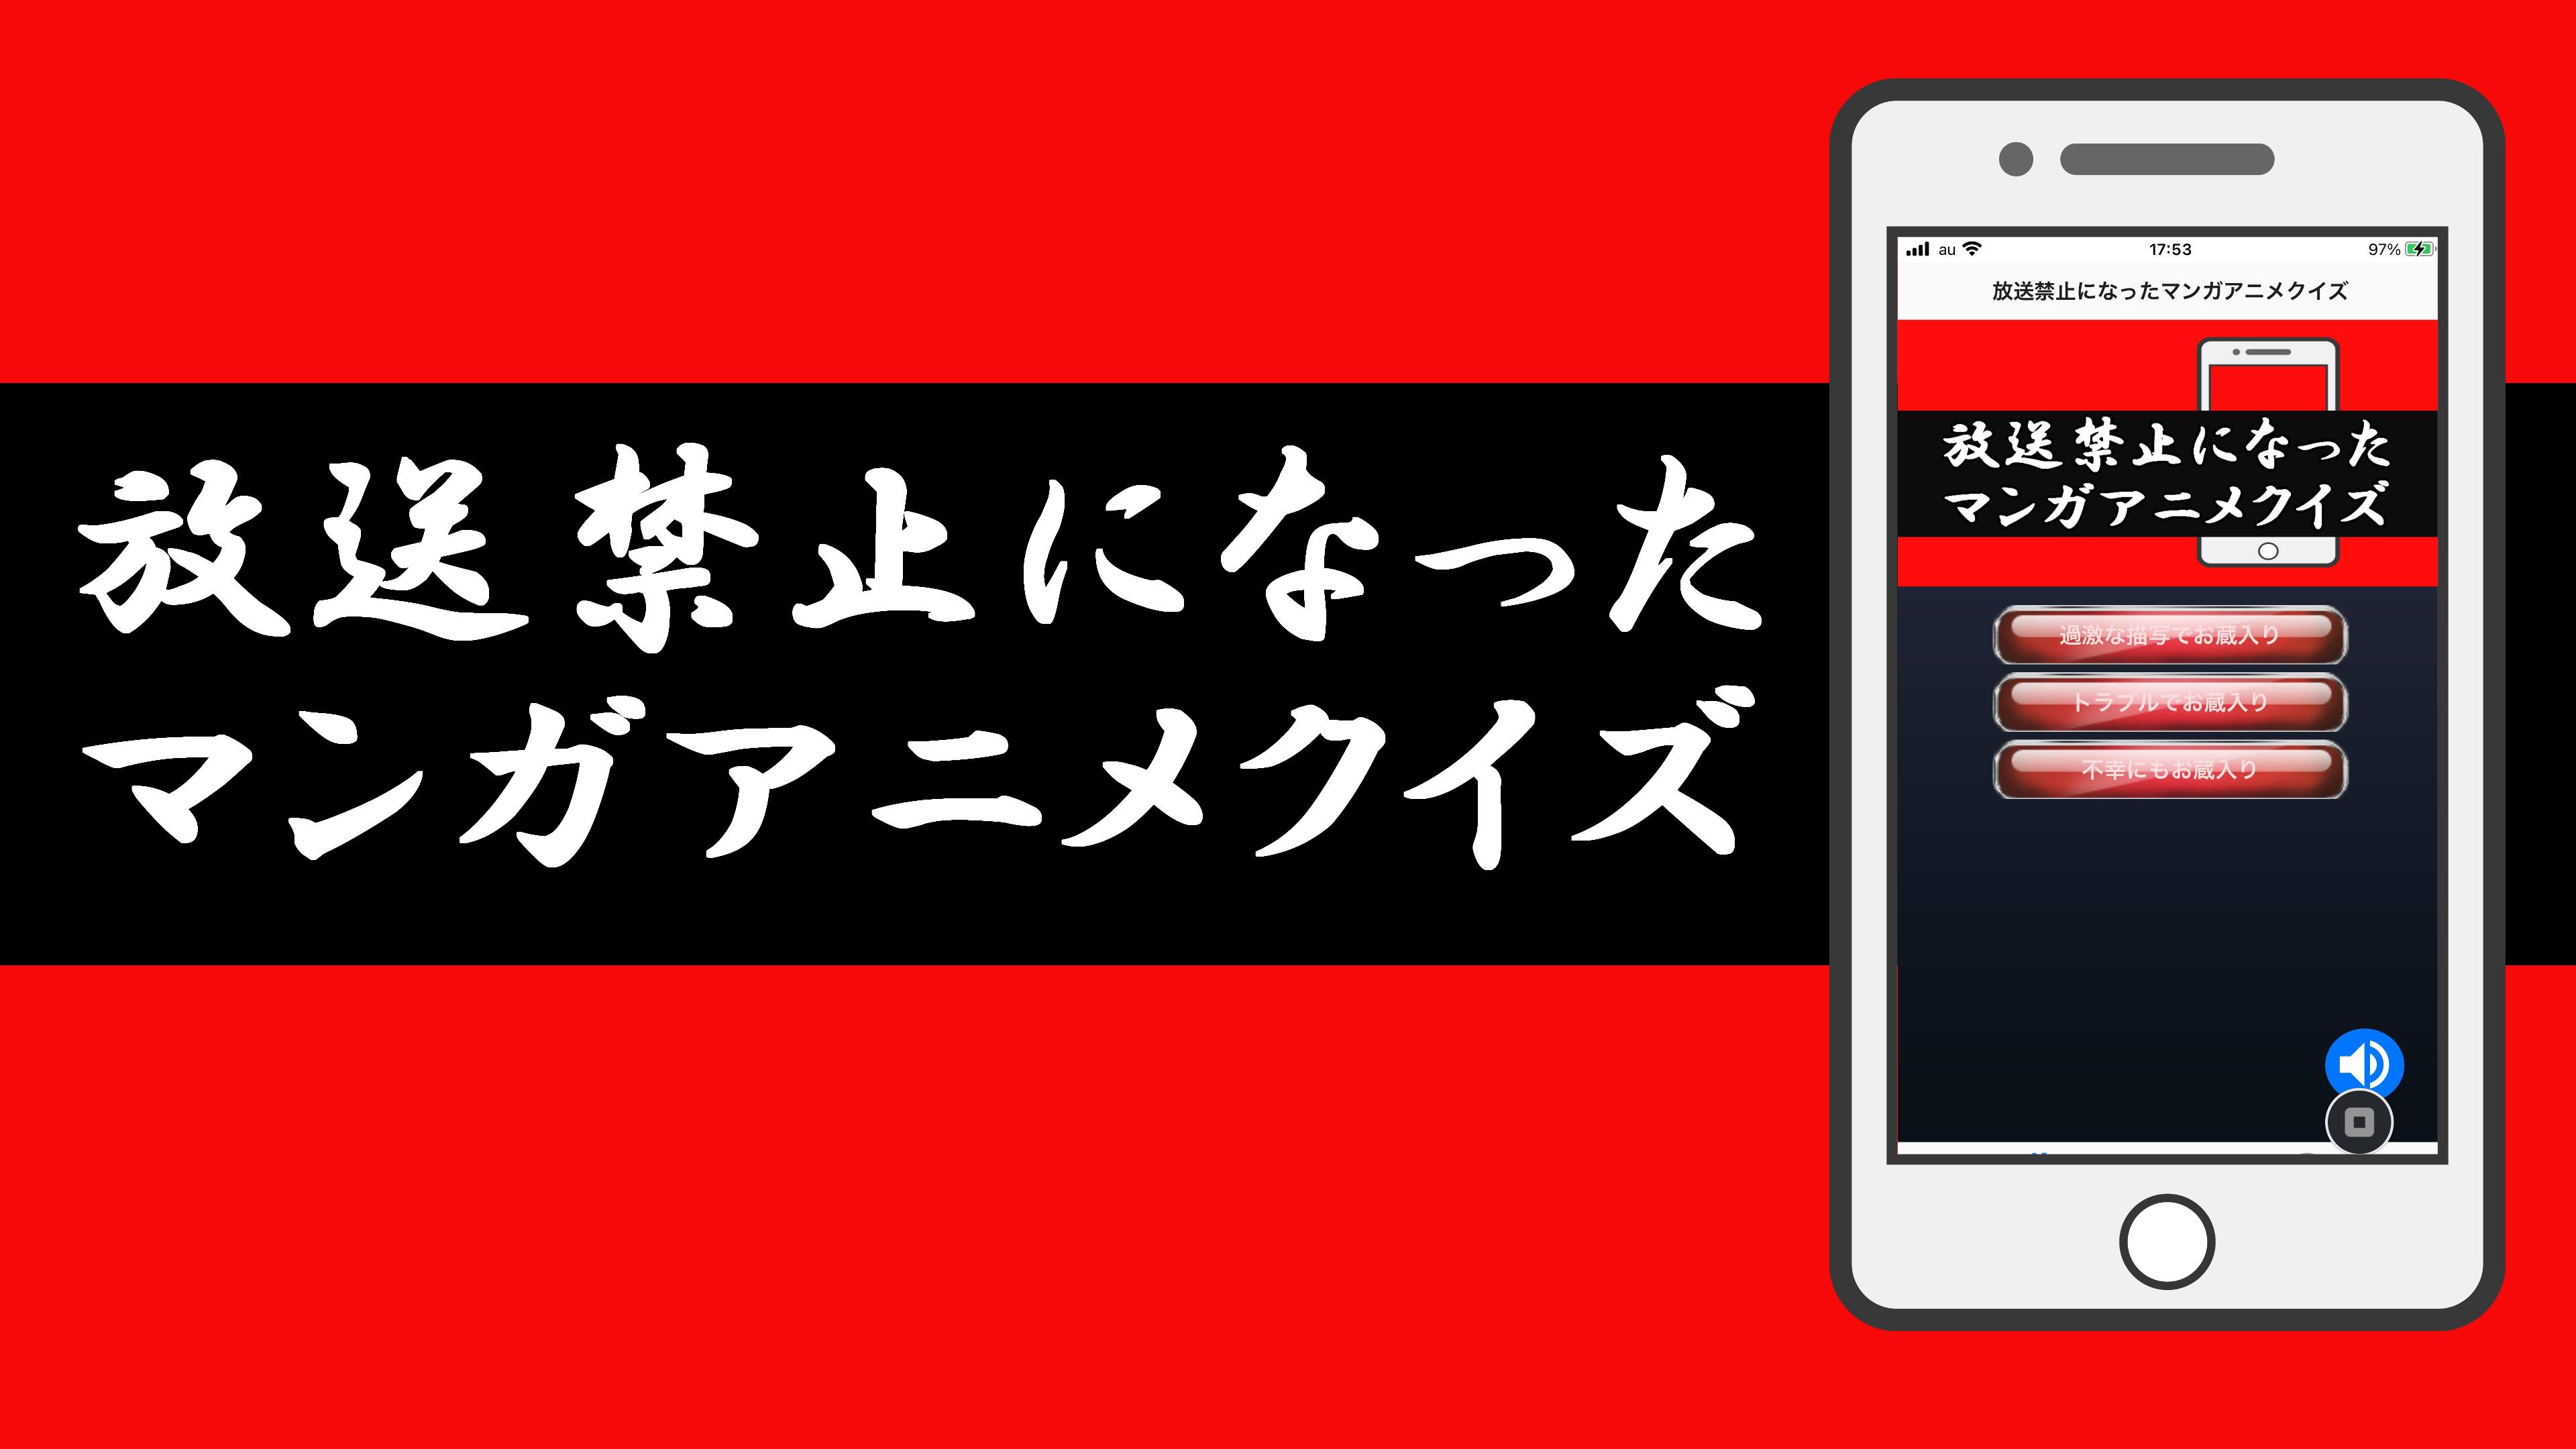 無料解禁 放送禁止になったマンガアニメクイズアプリ For Android Apk Download